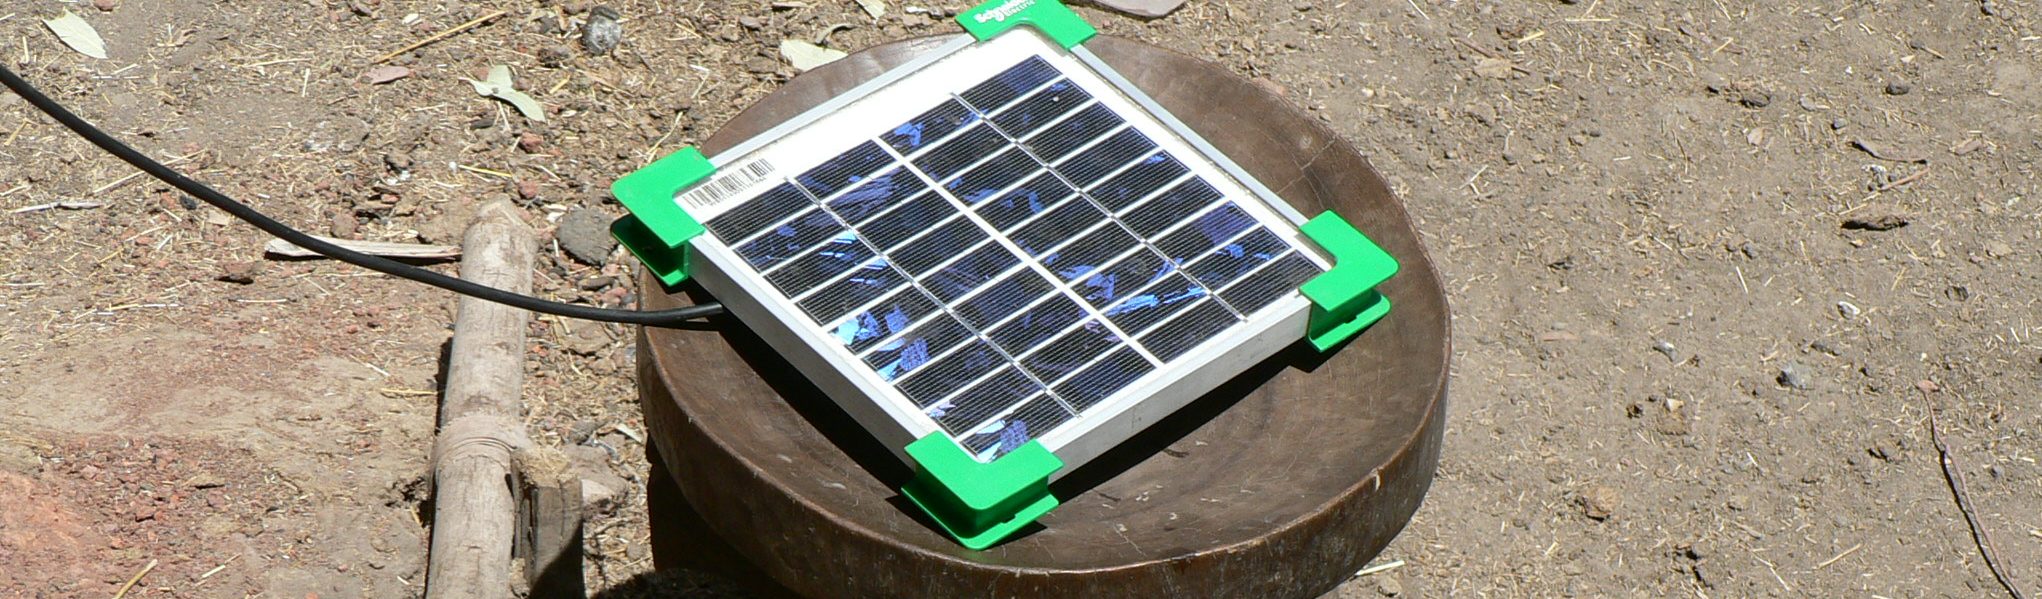 rural solar pannel climate change renewable energy